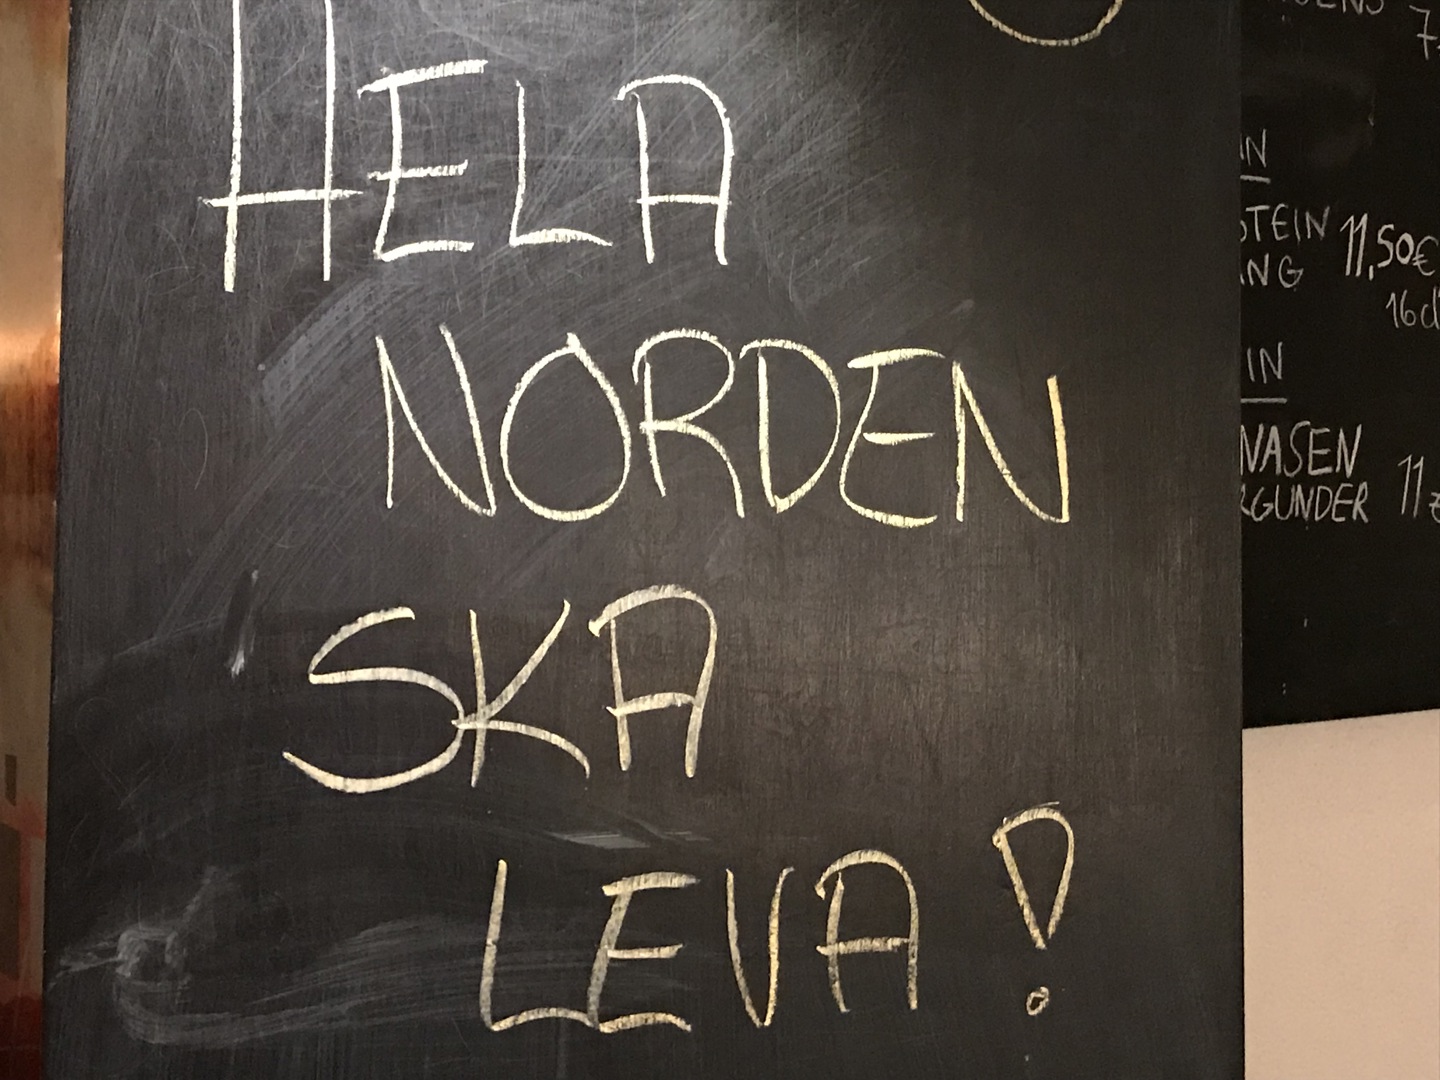 Hela Norden ska leva møttes på Åland